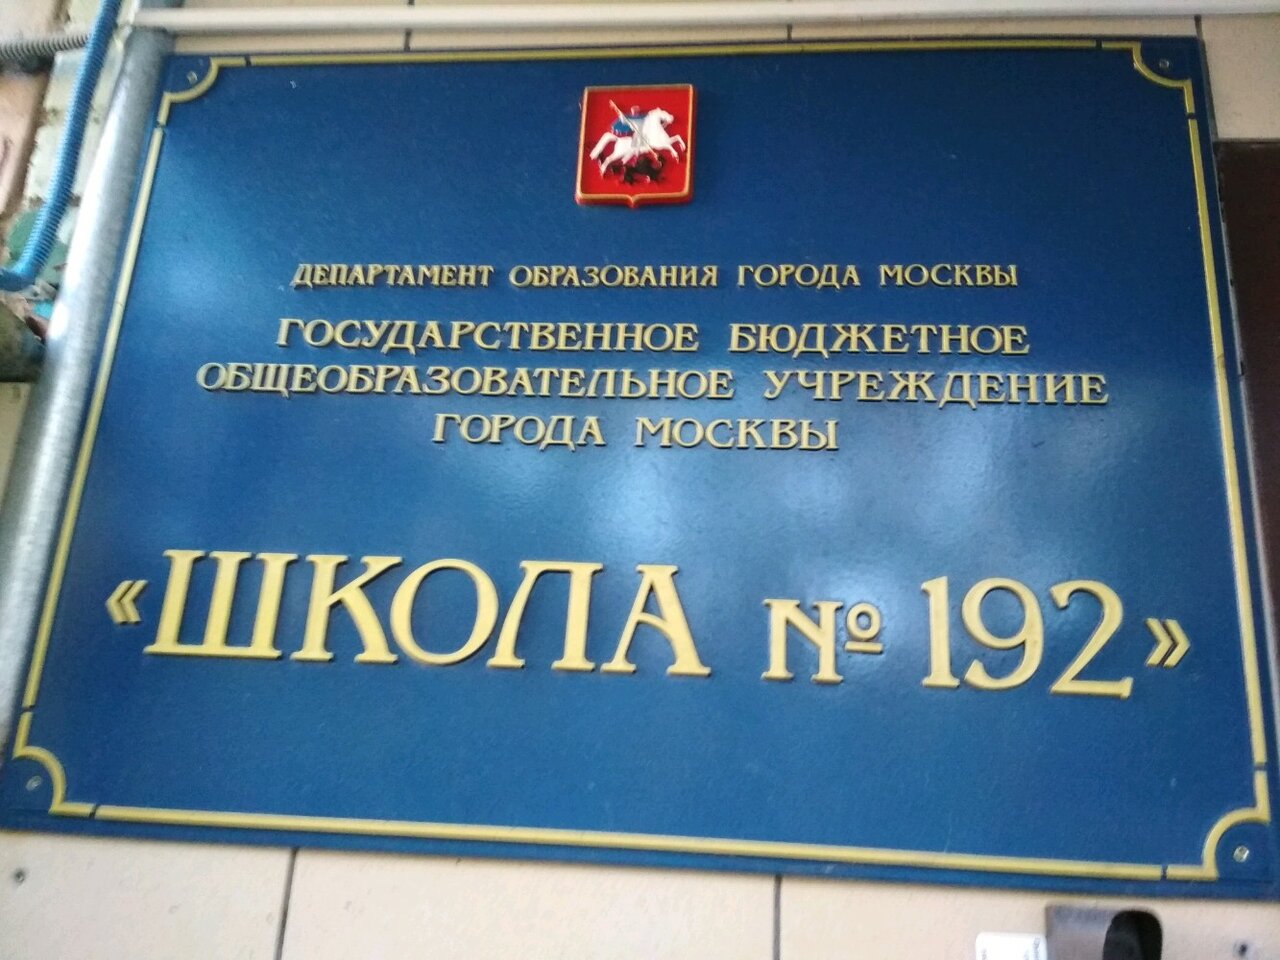 Департамент образования москва детский сад